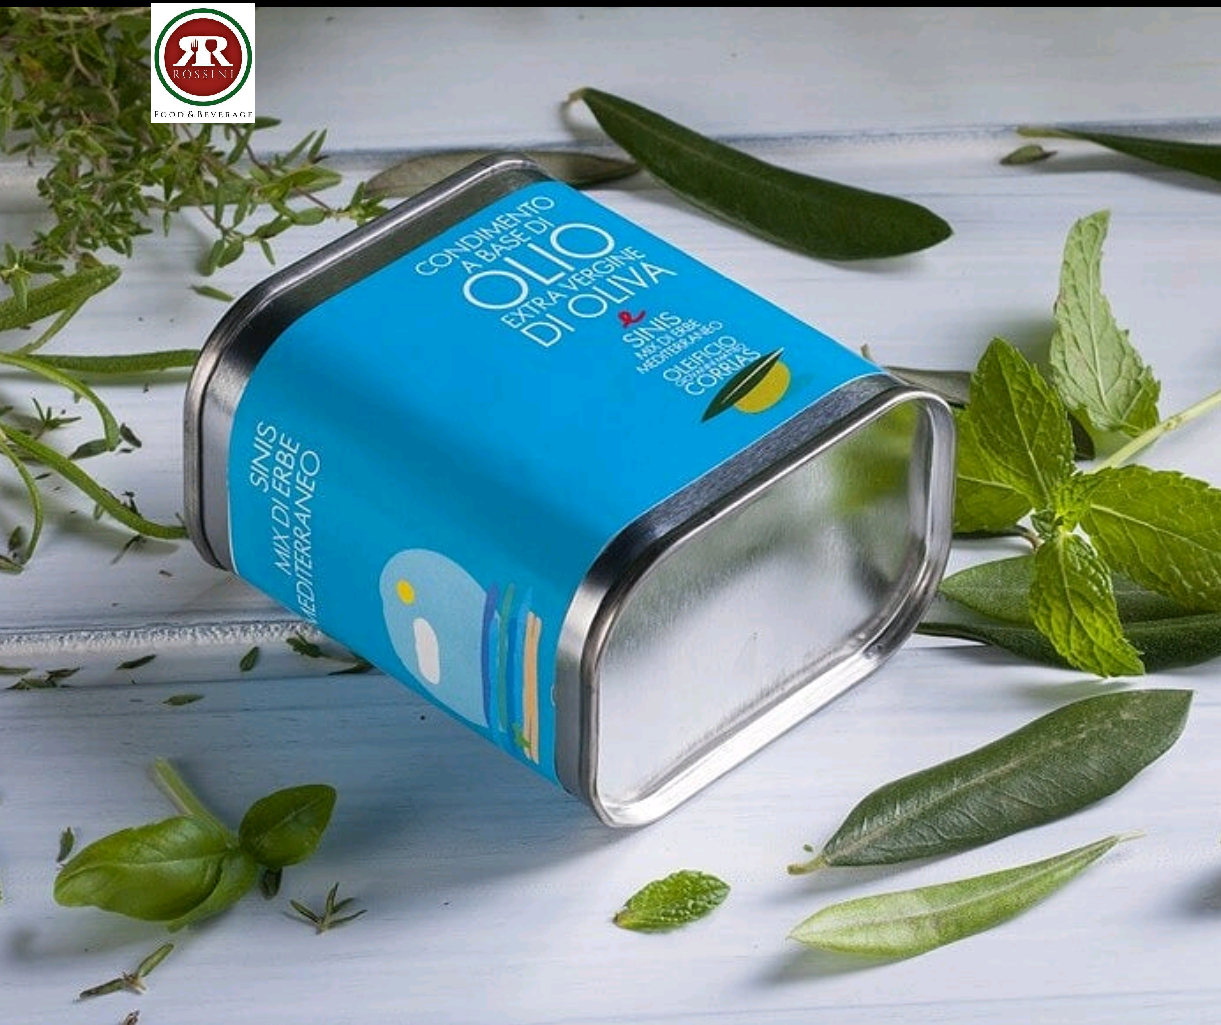 Condimento mix di erbe mediterraneo a base di olio Corrias lattina 175 ml